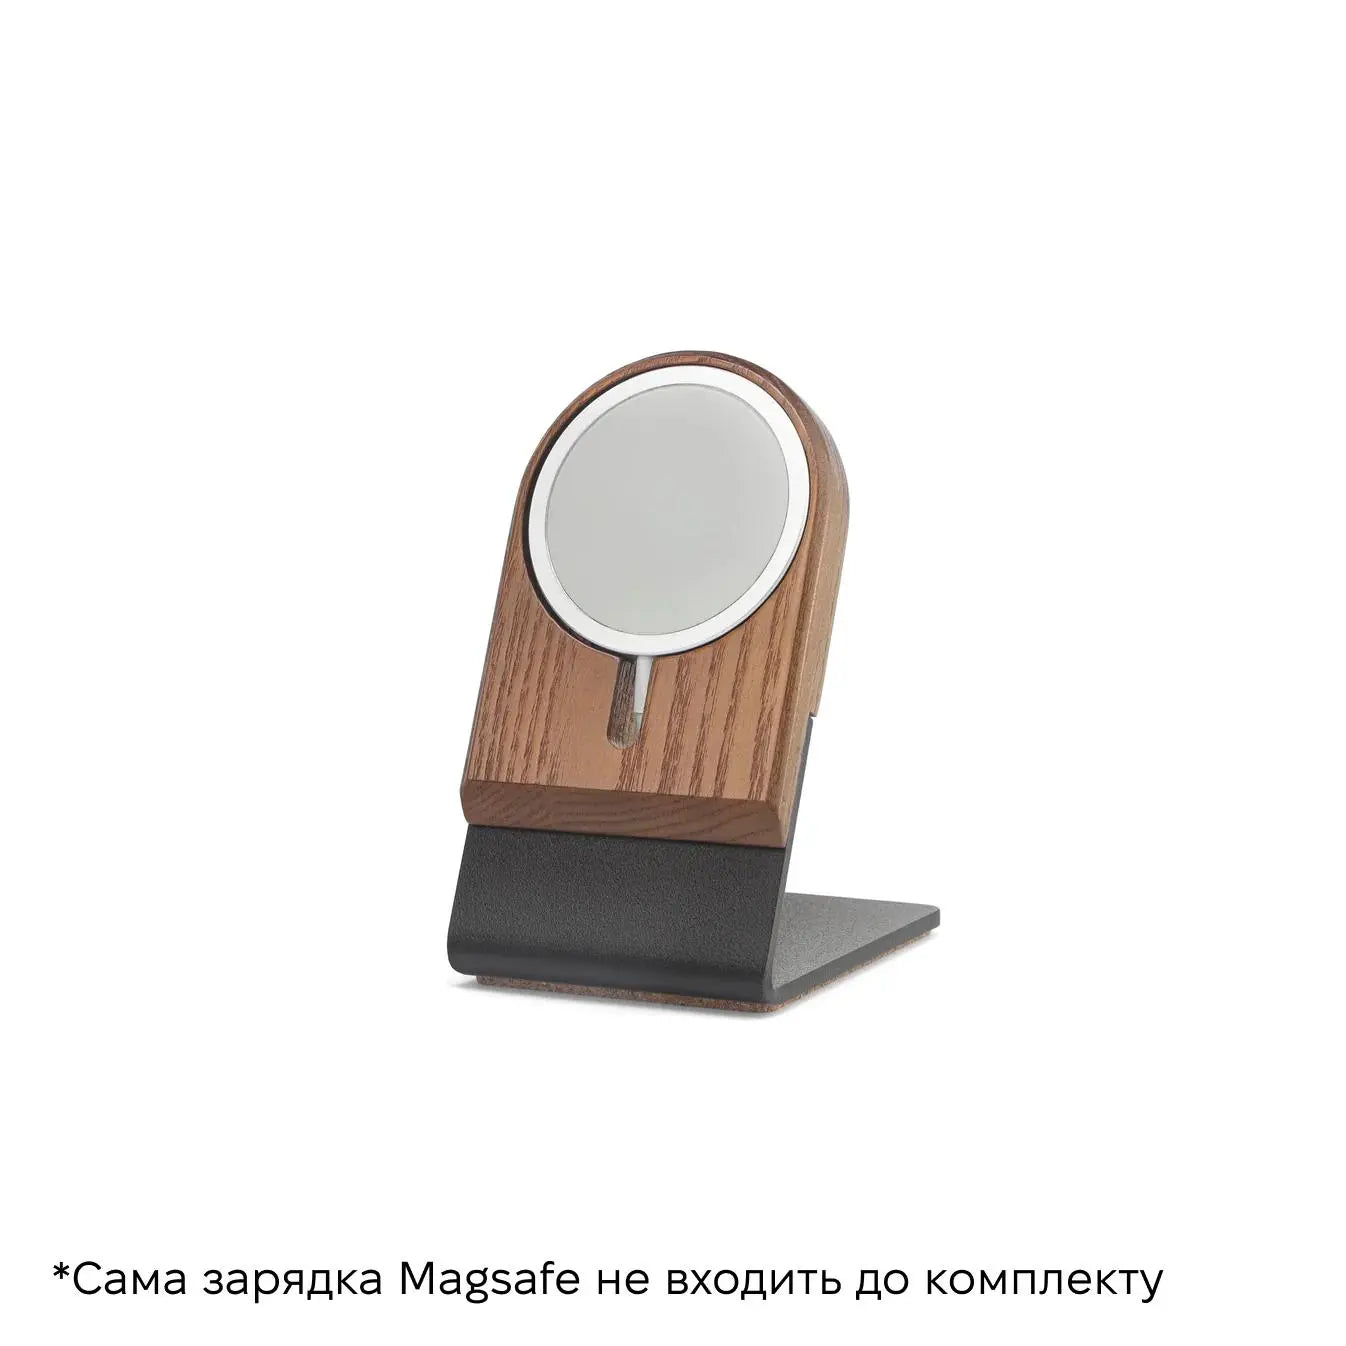 MA:ST - Magsafe підставка для телефону